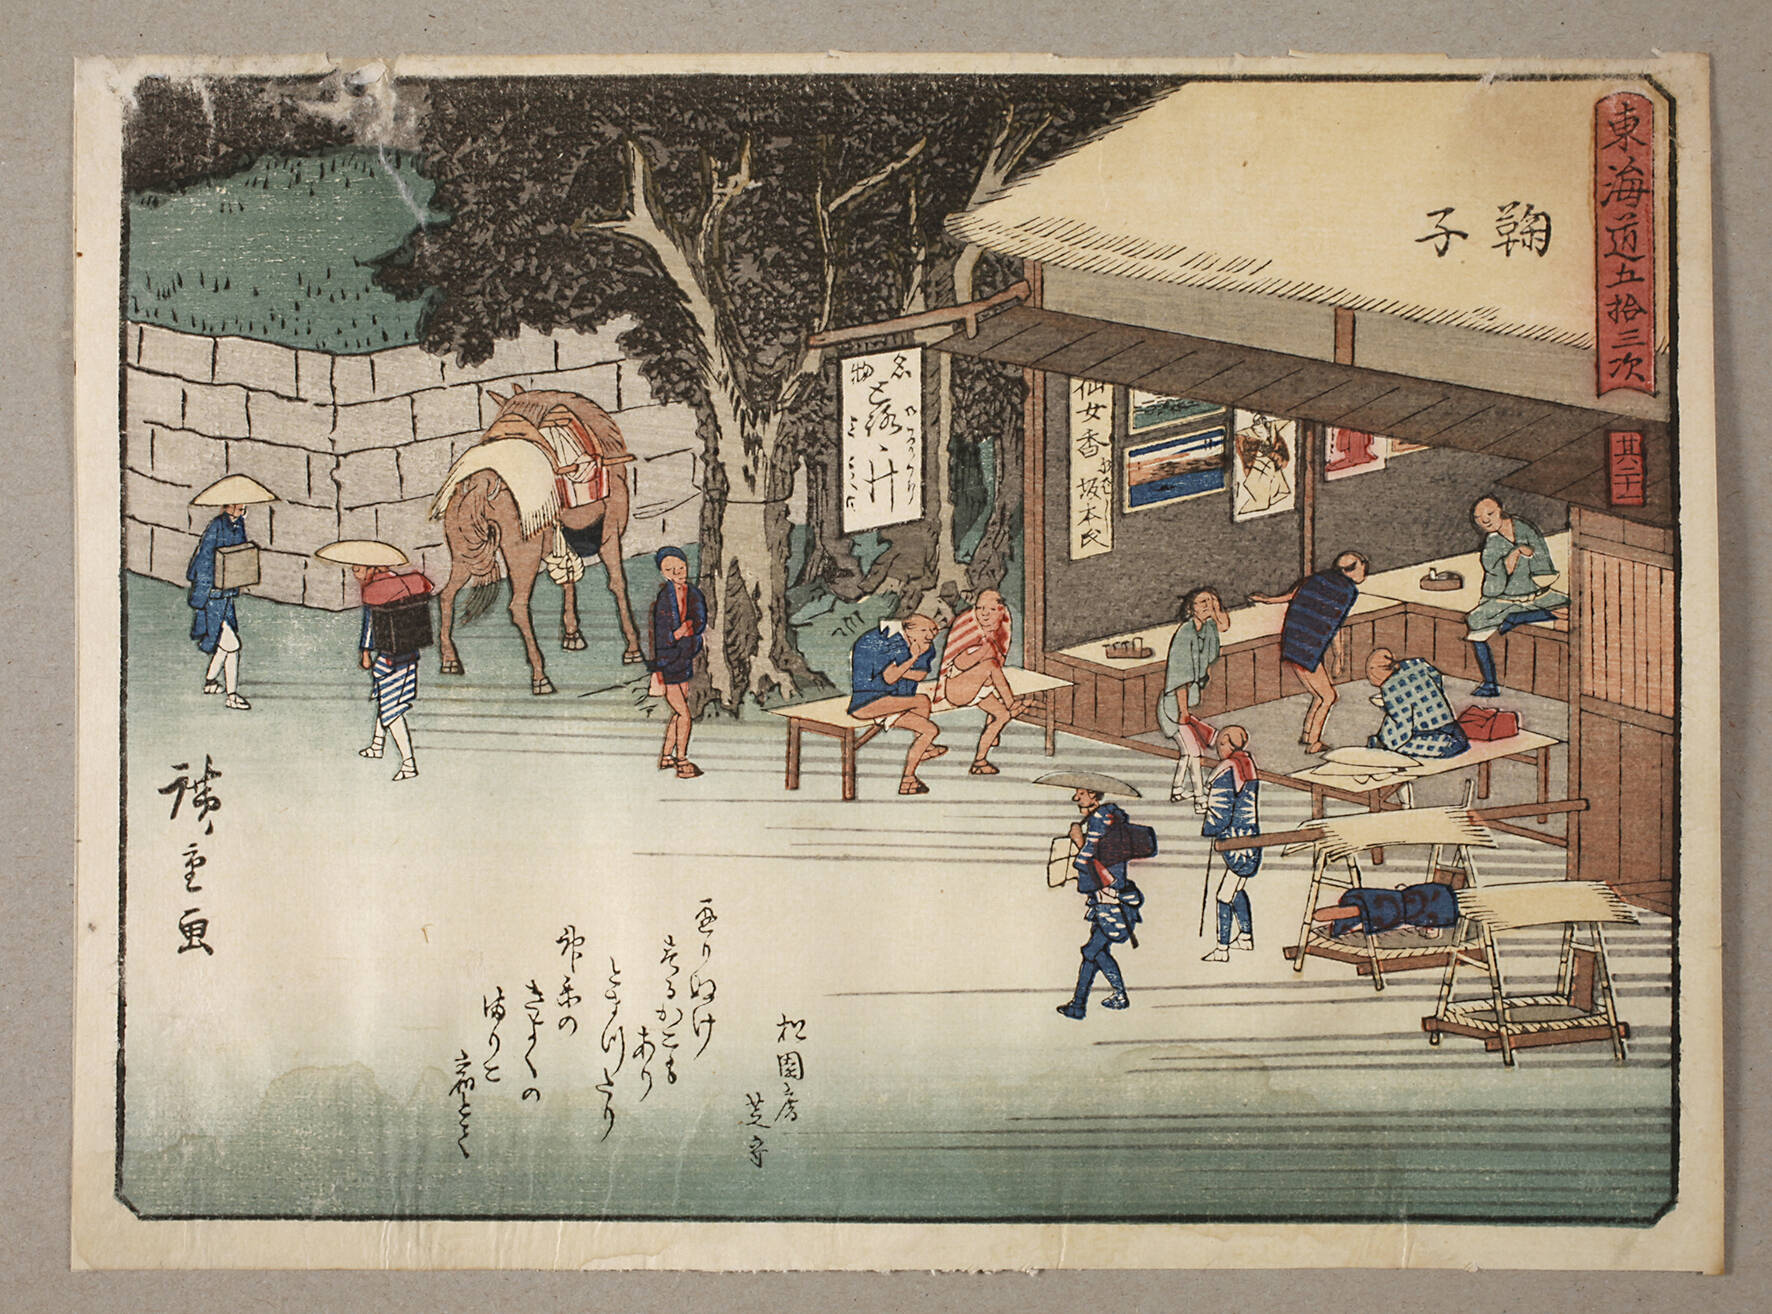 Farbholzschnitt Ando Hiroshige